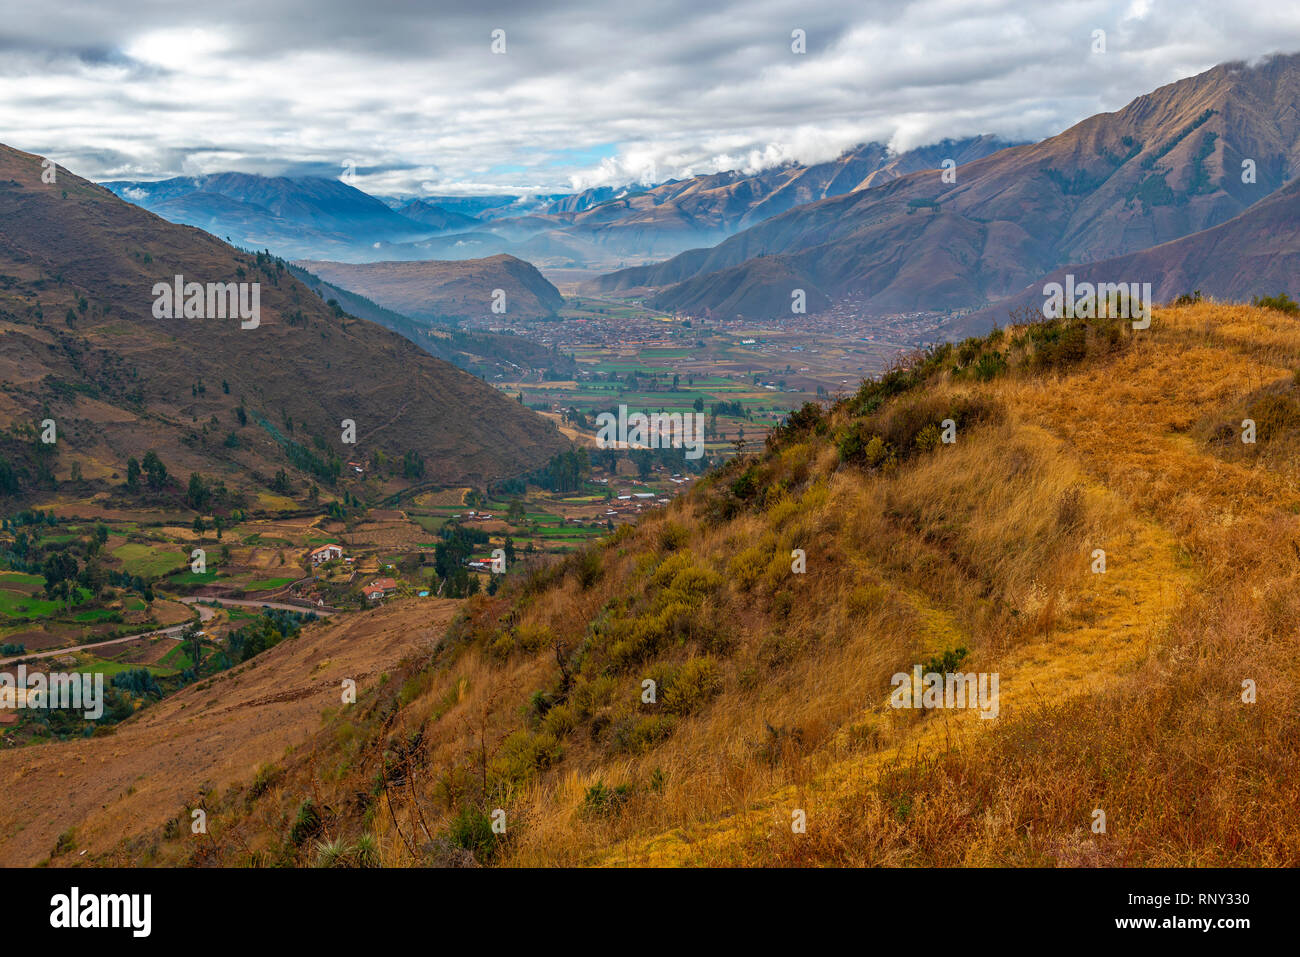 Landschaft Foto auf das Heilige Tal der Inkas nach Urubamba Fluss außerhalb von Cusco, Peru. Stockfoto